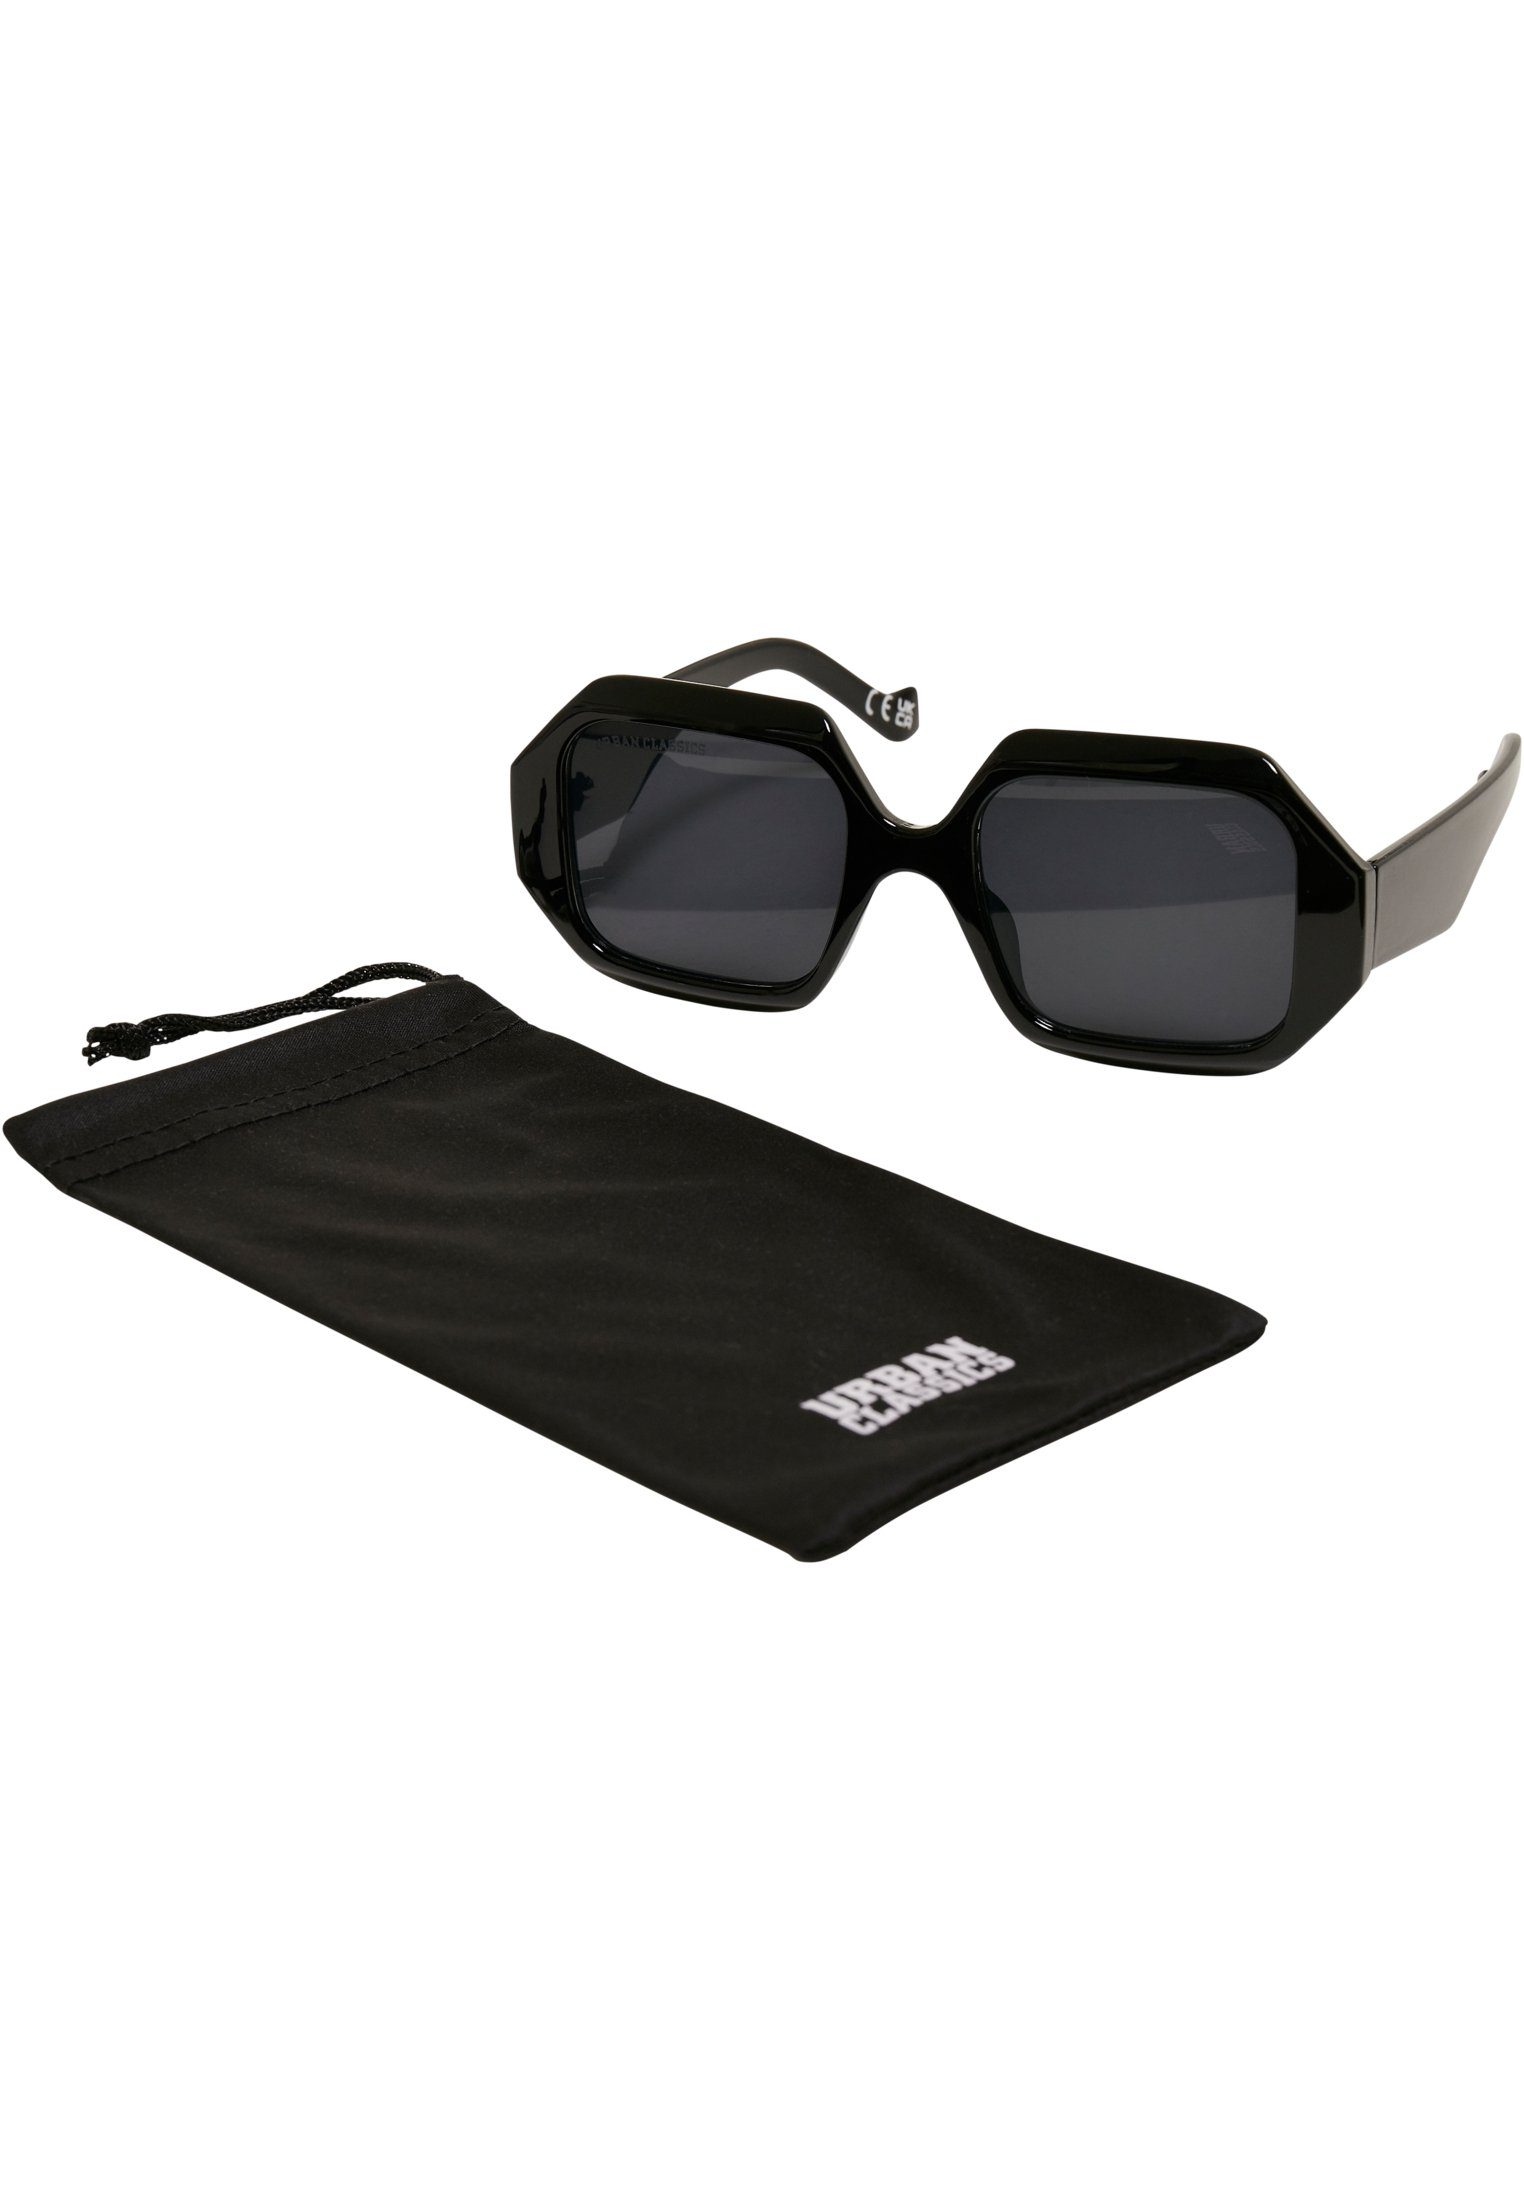 URBAN CLASSICS Sonnenbrille Unisex Sunglasses San Rafael